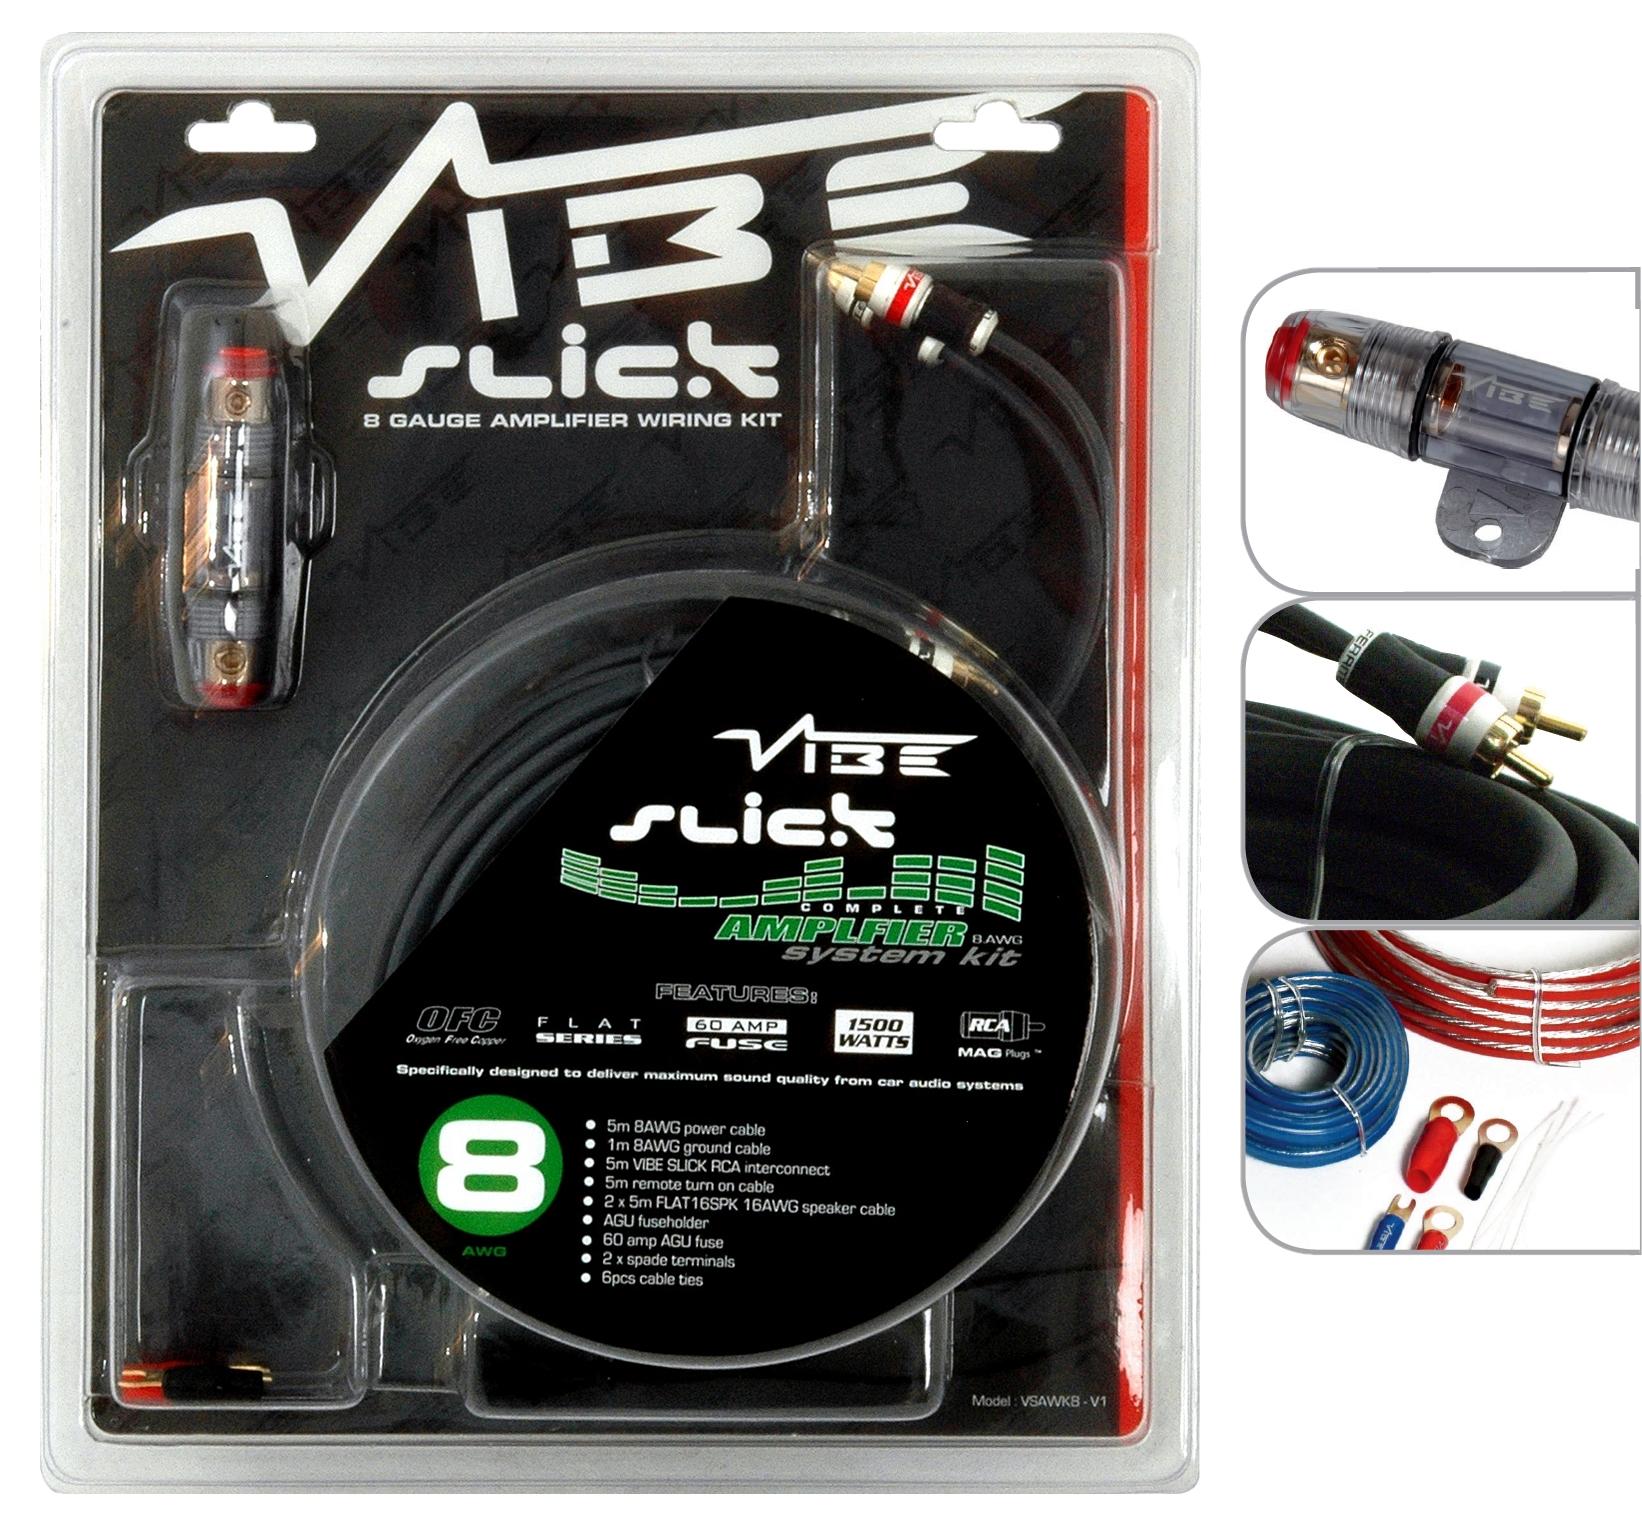 Vibe Slick 8 Gauge Amplifier Wiring Kit